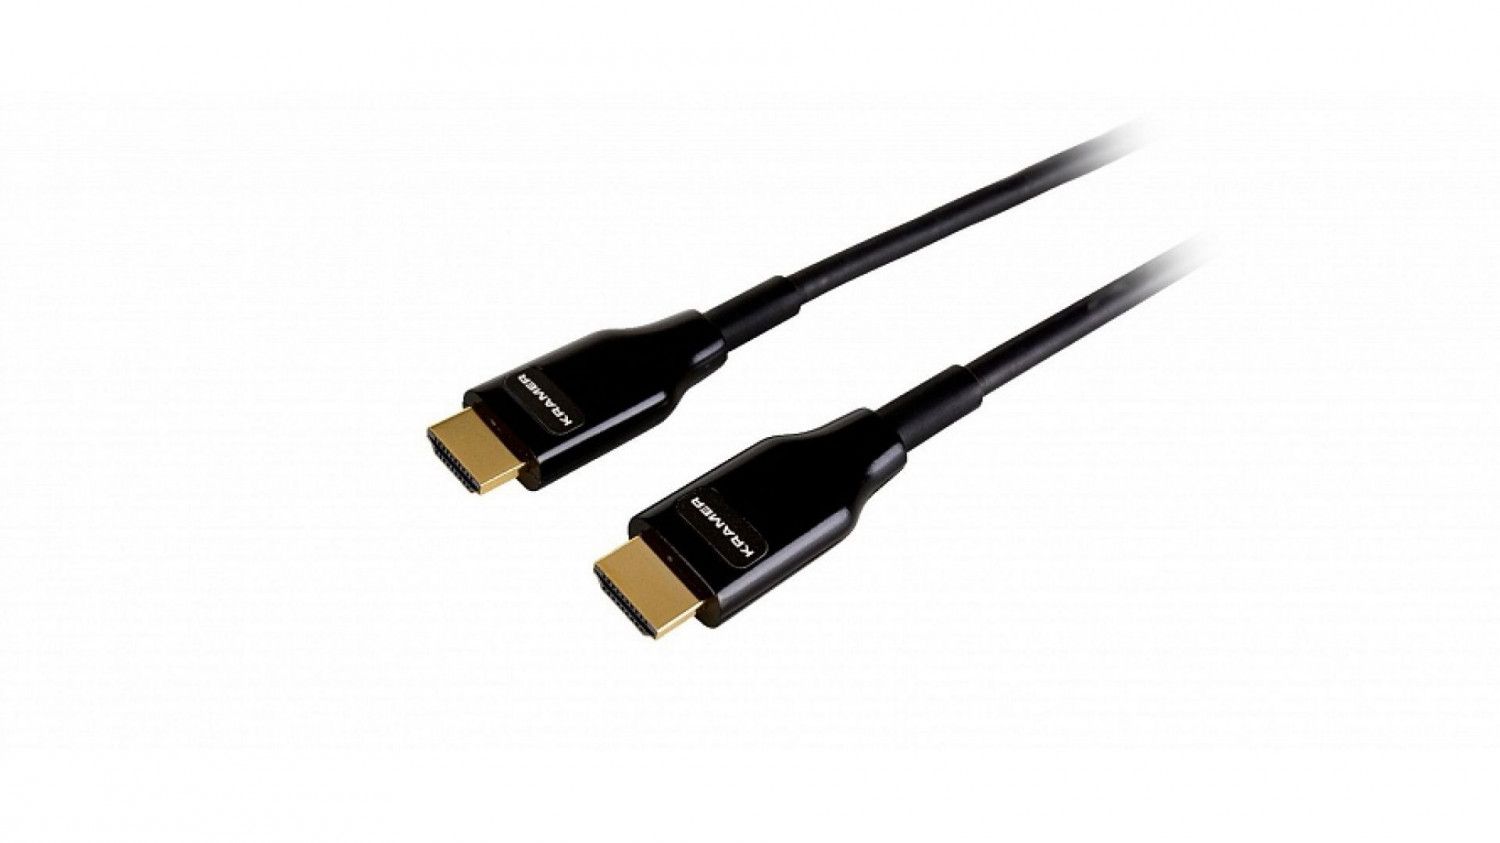 Активный оптический кабель HDMI для арендных и выставочных мероприятий, поддержка 4К 60 Гц (4:4:4), 15 м Kramer Electronics CRS-AOCH/CLR/60-50